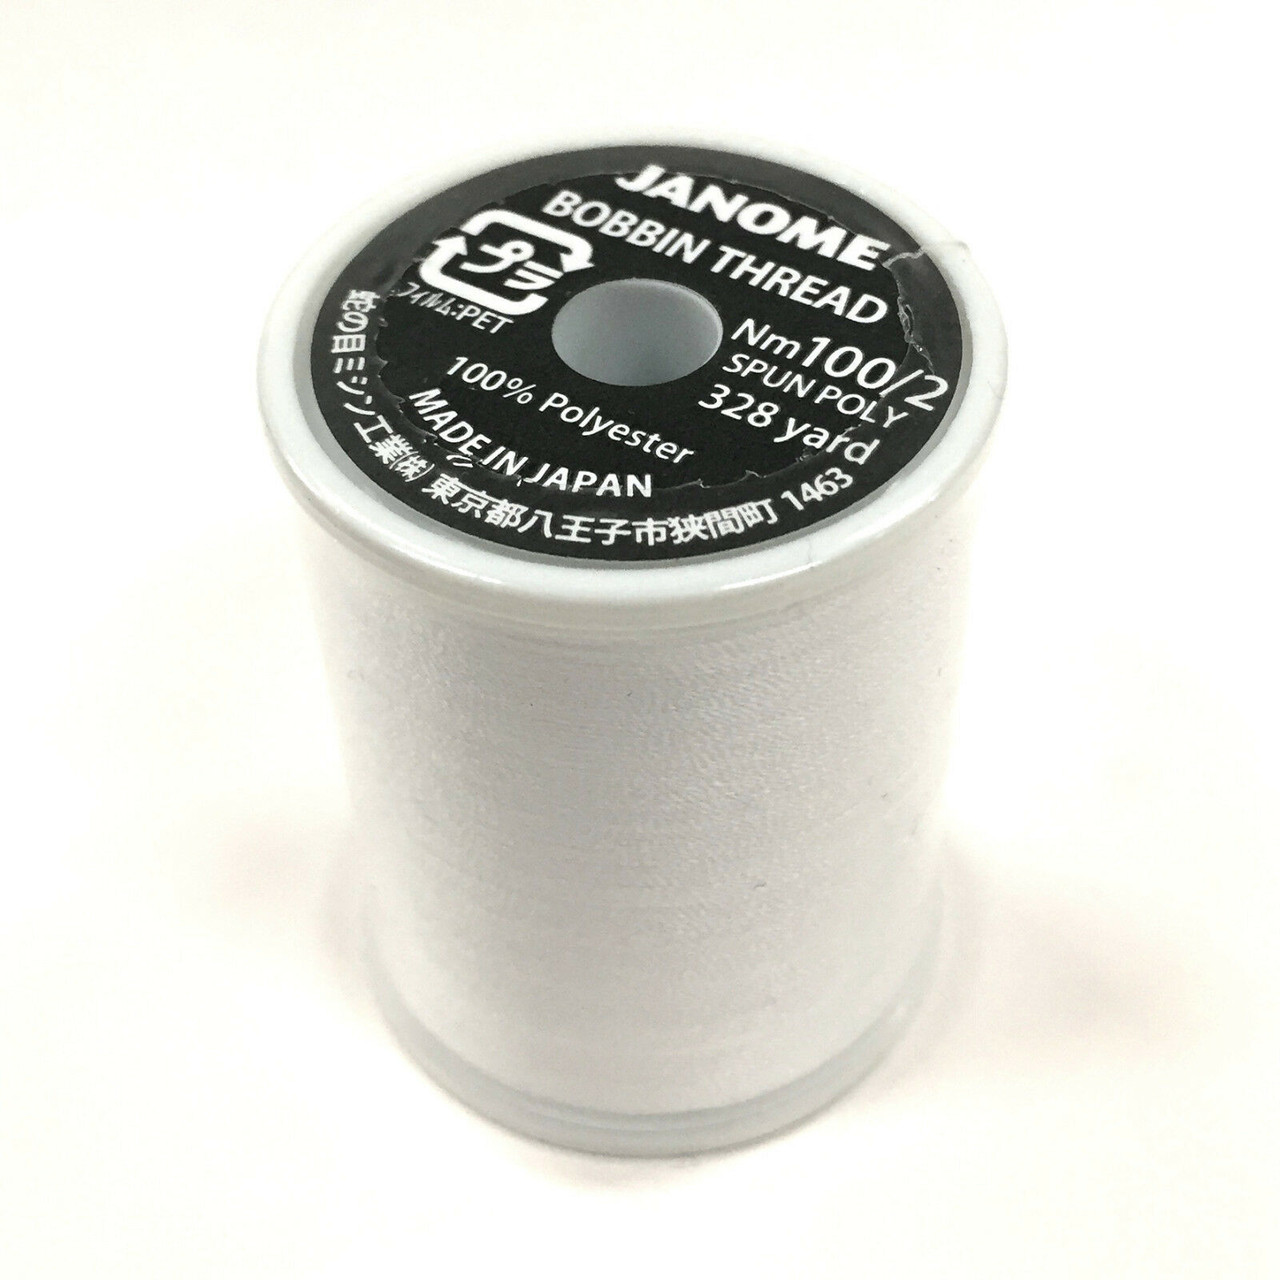 Janome J208-16C White Embroidery Bobbin Thread 1600M